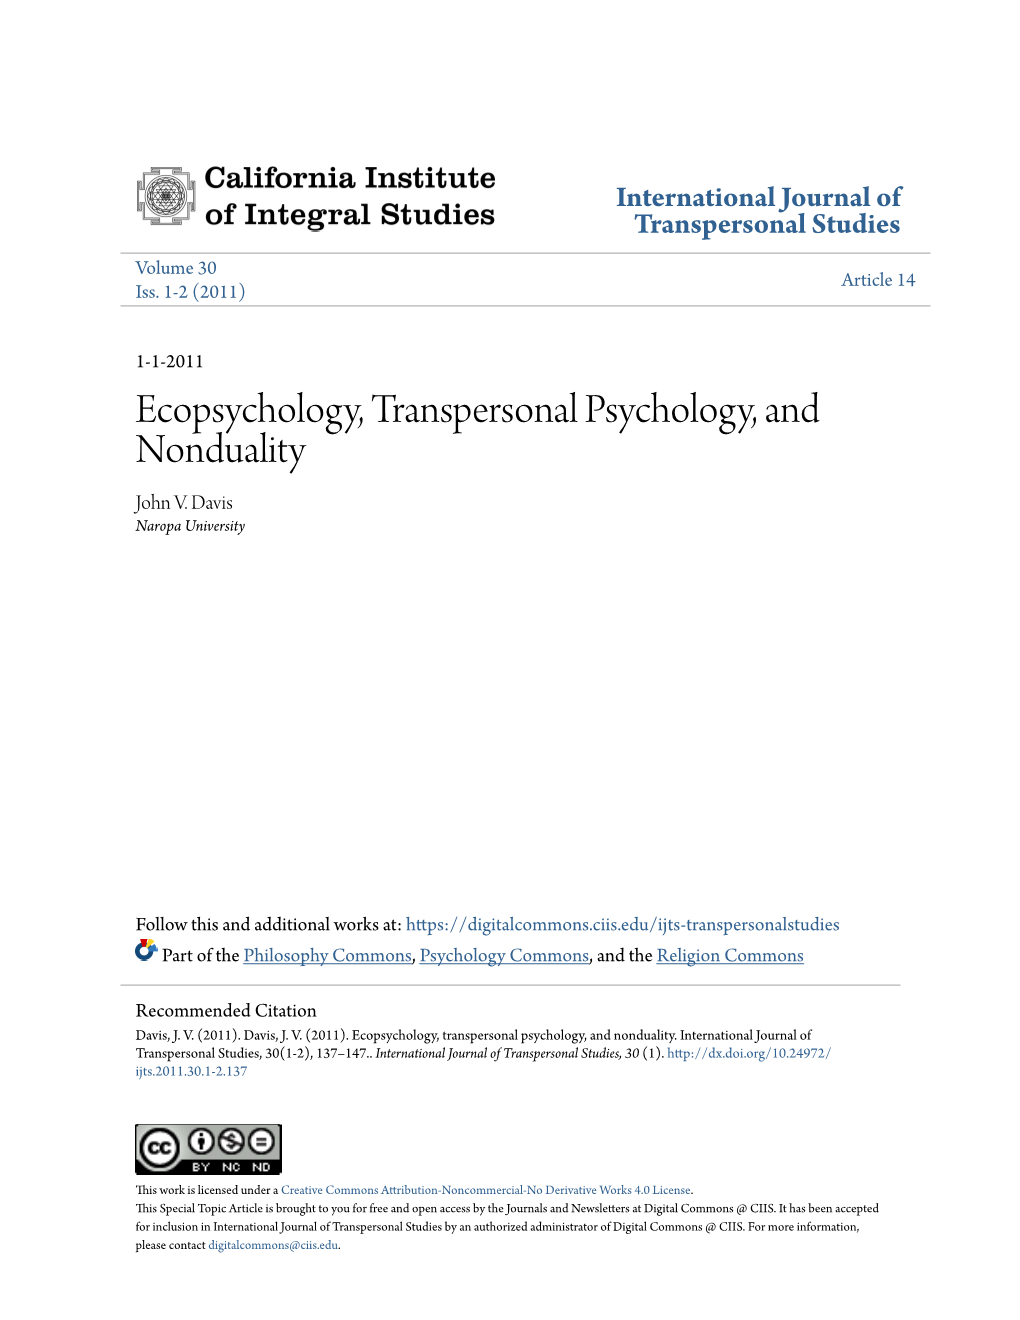 Ecopsychology, Transpersonal Psychology, and Nonduality John V